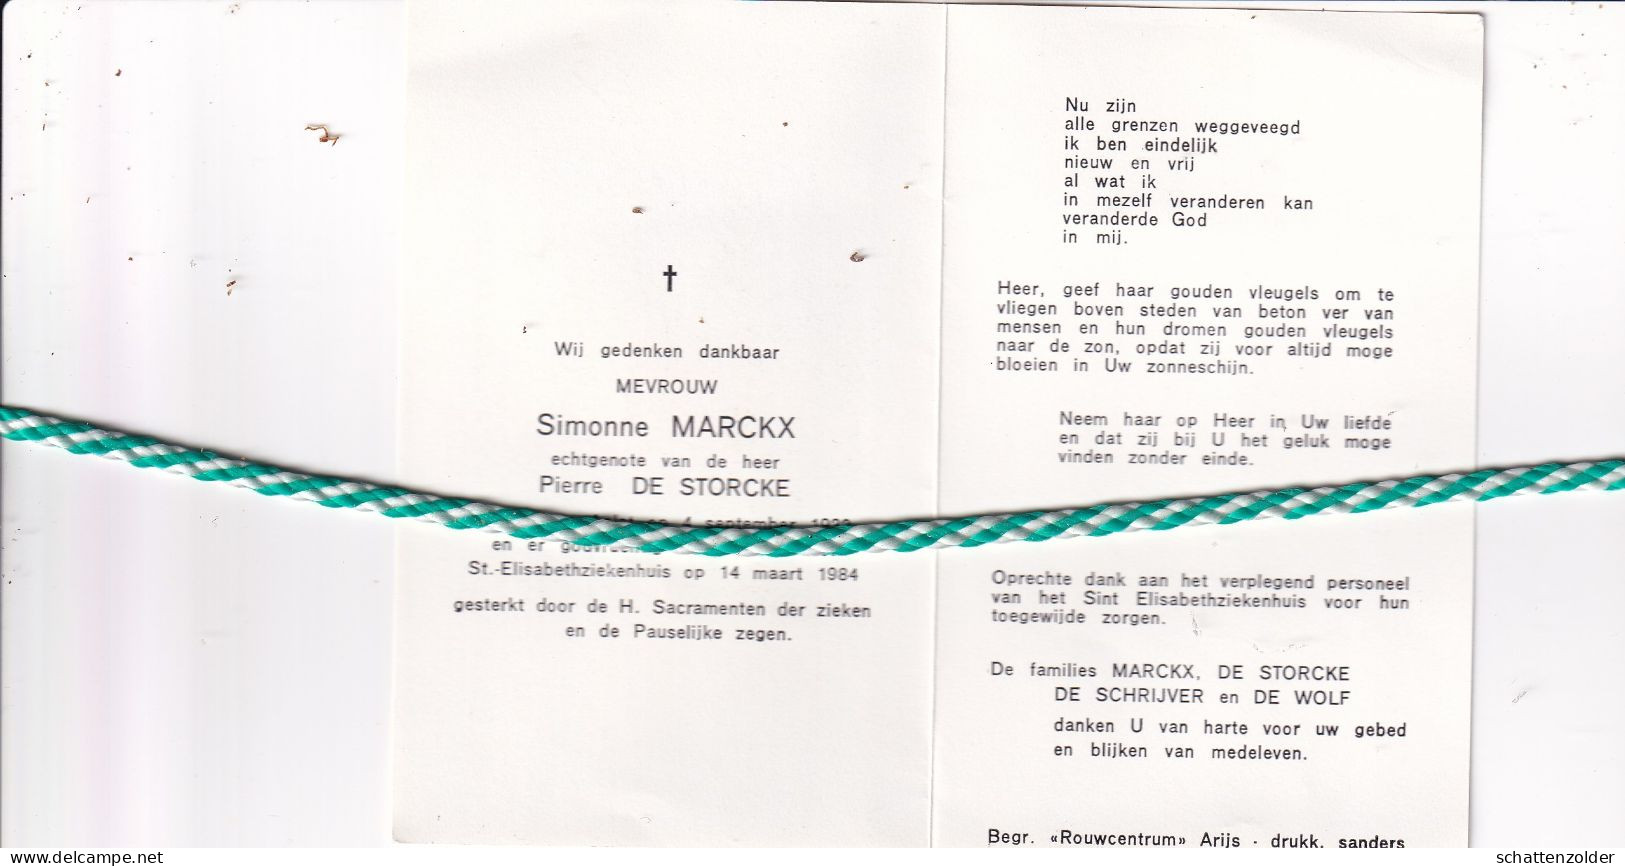 Simonne Marckx-De Storcke, Aalst 1932, 1984 - Overlijden